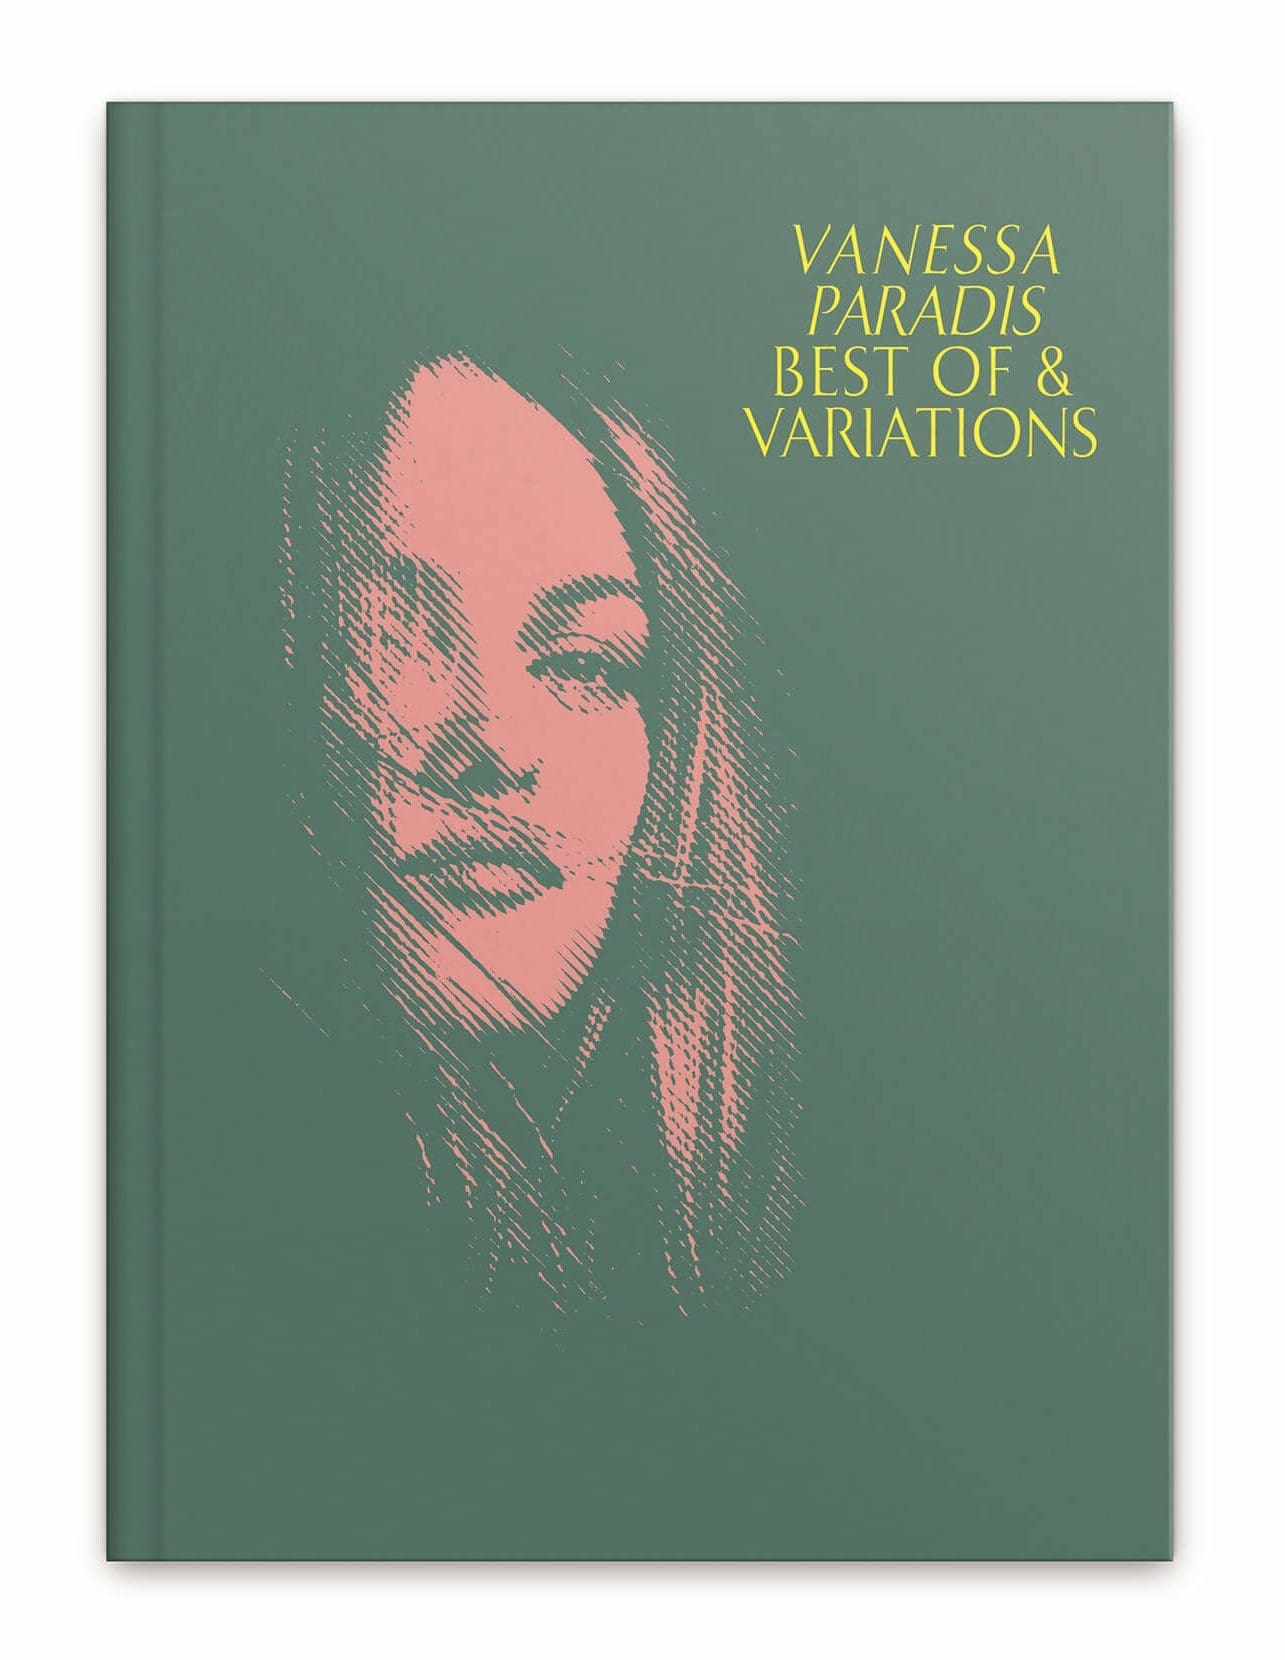 Couverture du livre disque collector pour la sortie du Best of de Vanessa Paradis, Edition design par IchetKar